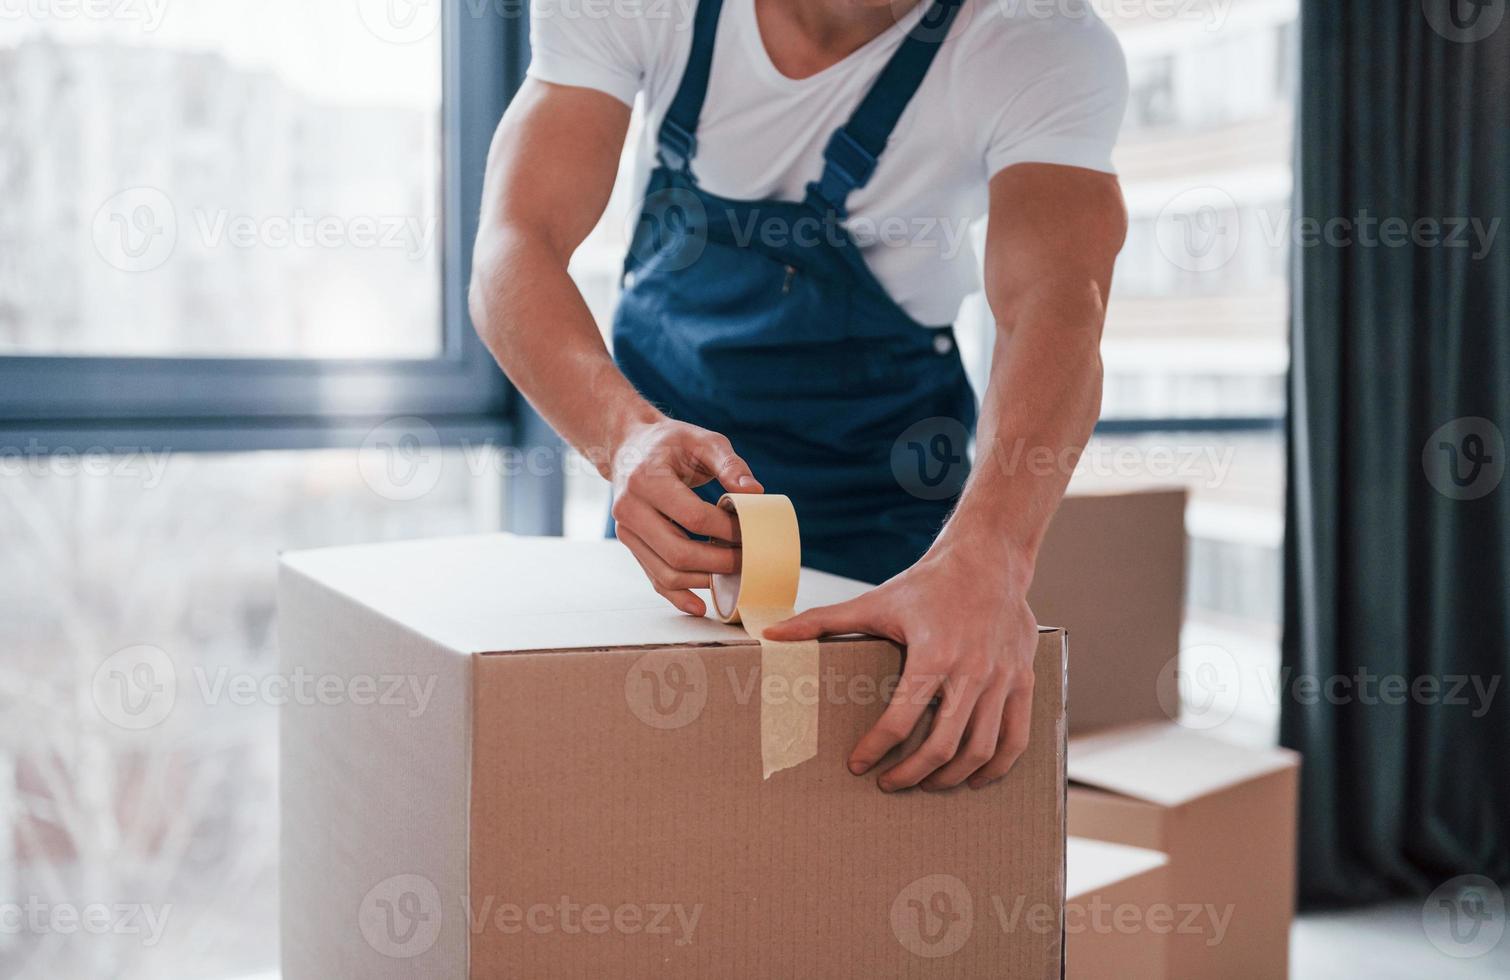 verpakking de doos. jong mannetje verhuizer in blauw uniform werken binnenshuis in de kamer foto